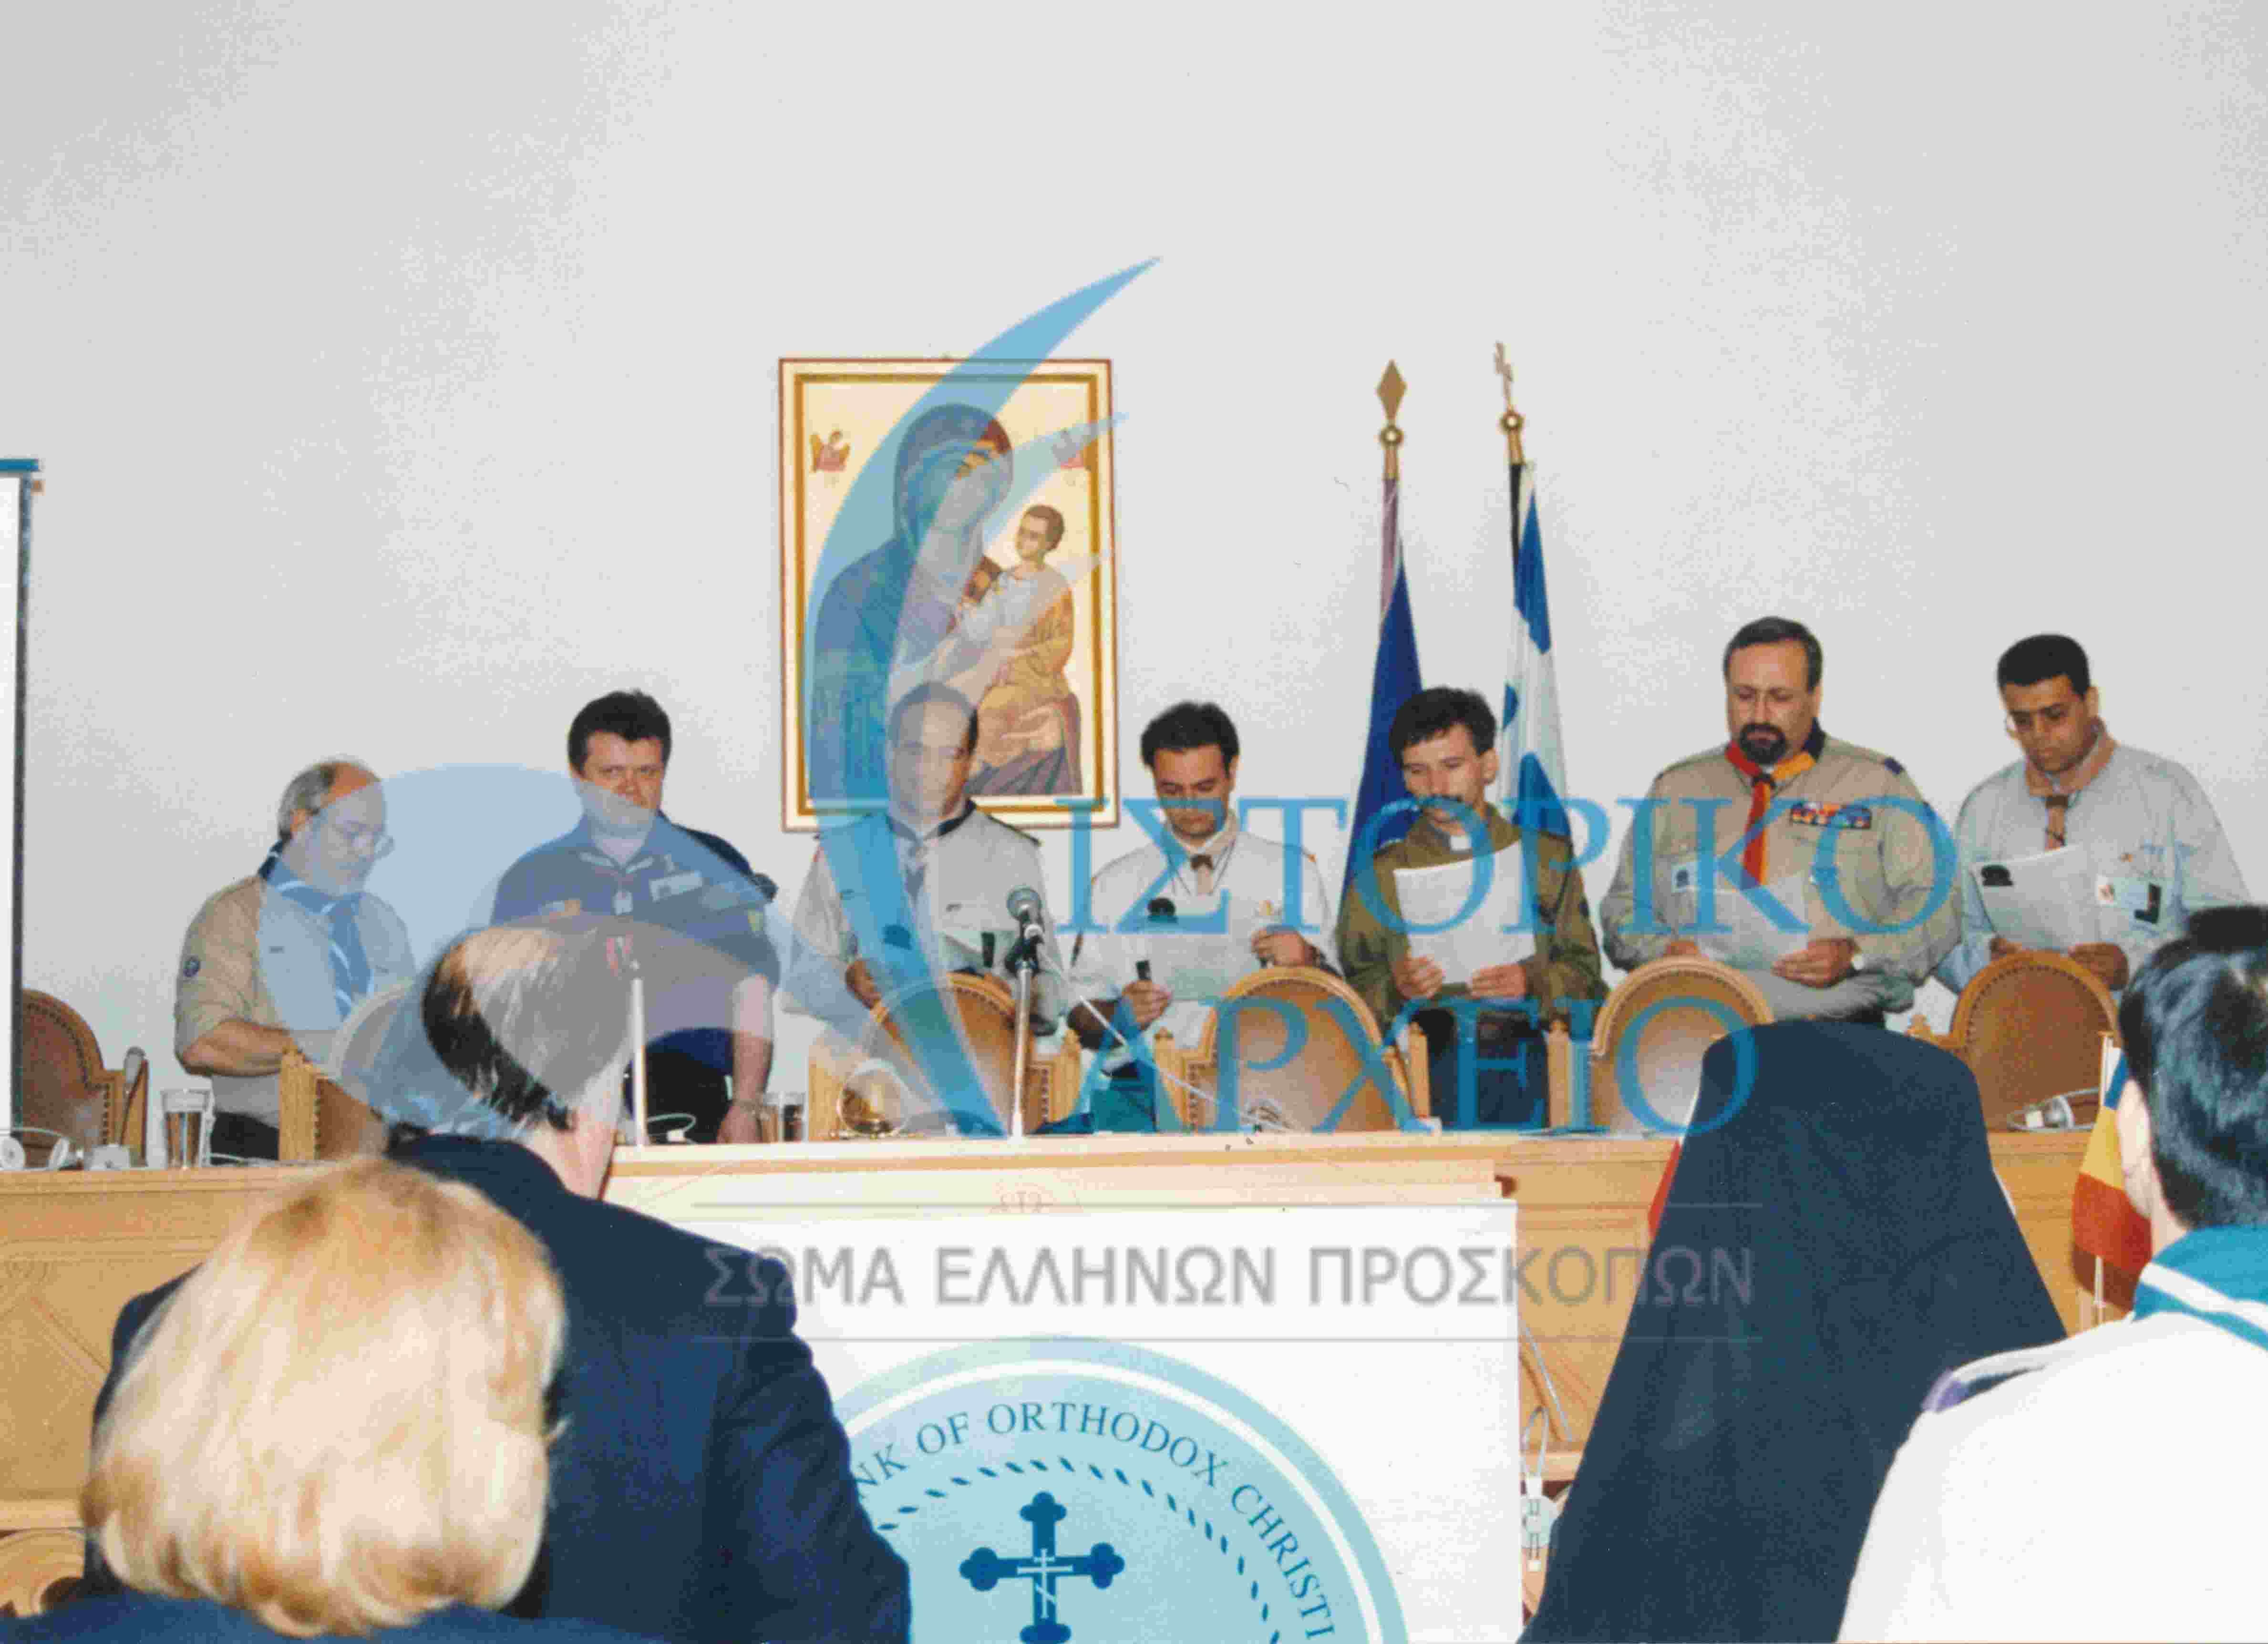 Από το Διορθόδοξο Συνέδριο Προσκόπων του ΔΕΣΜΟΣ στη Μονή Πεντέλης το 1997.